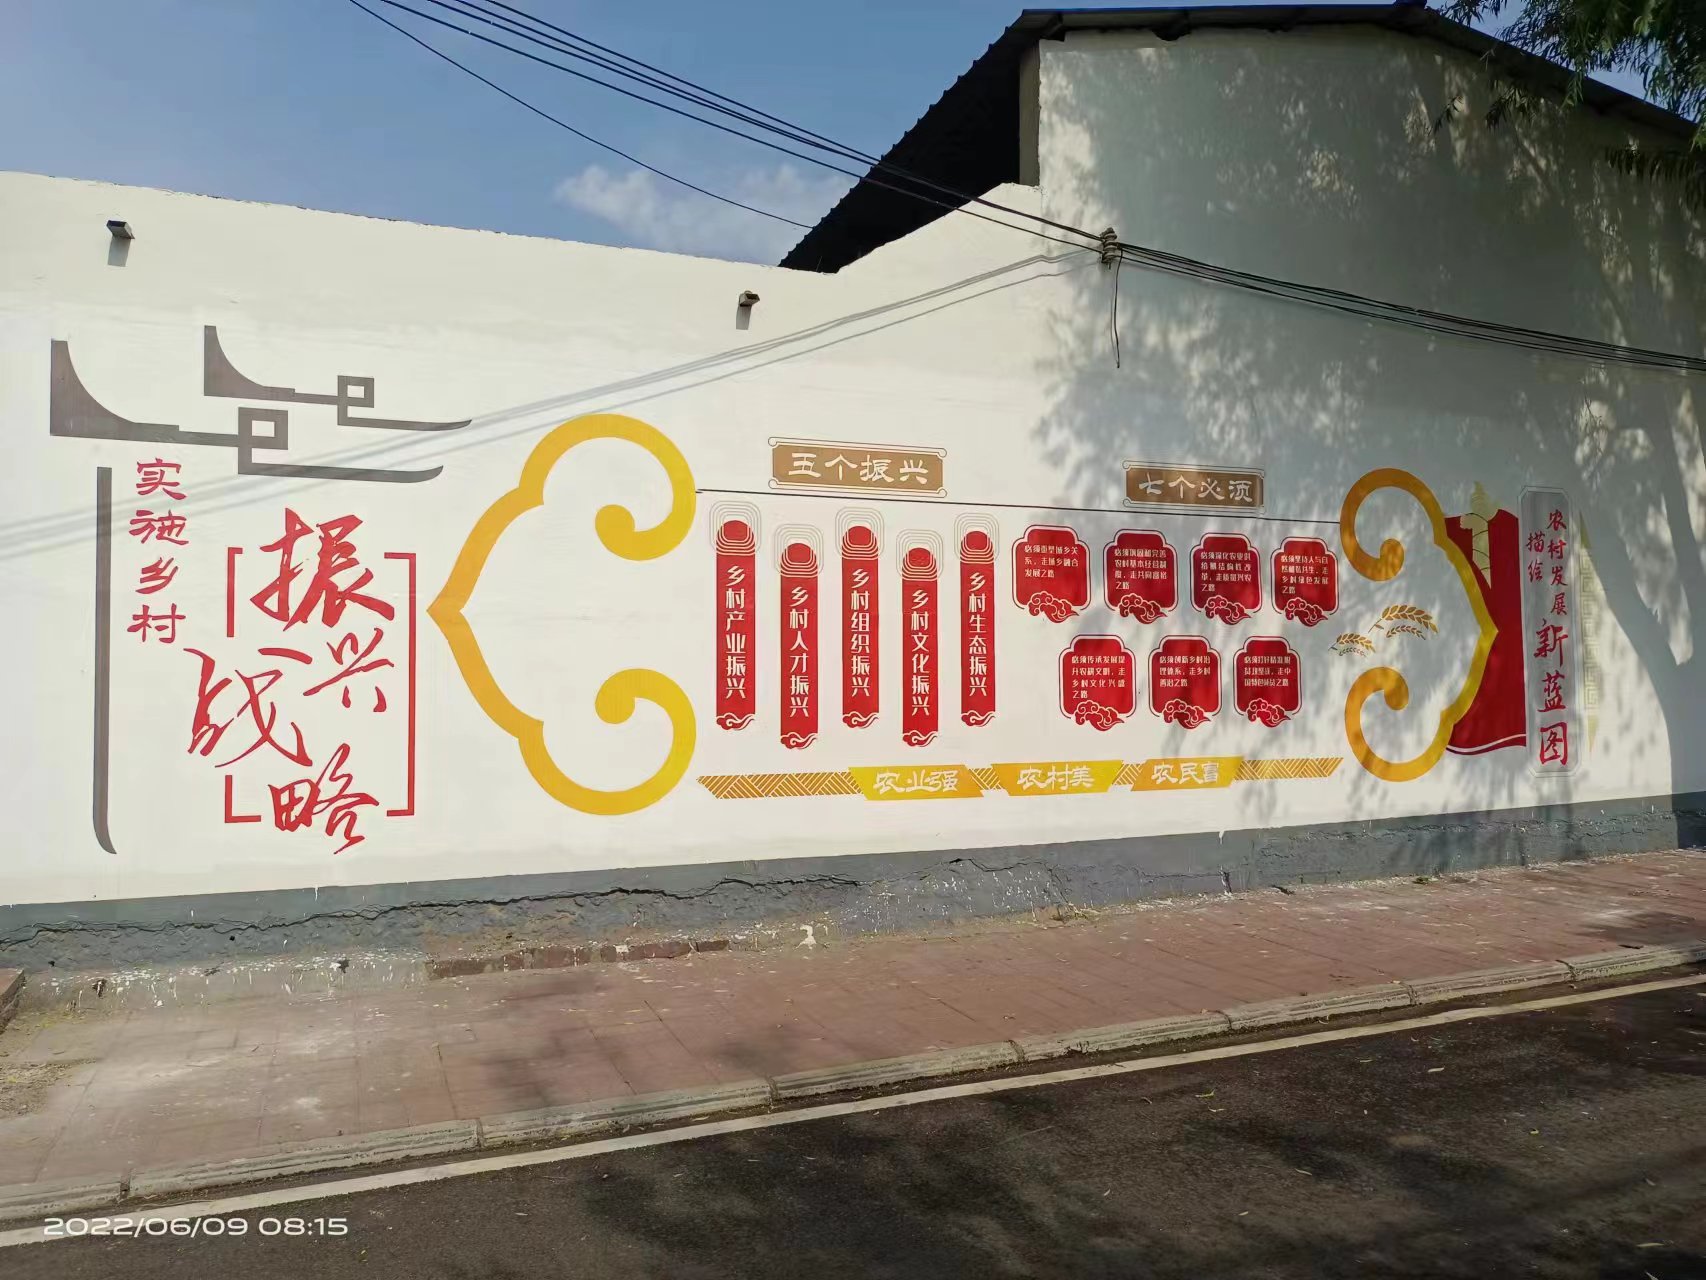 西吉县油漆广告 西吉县民墙广告